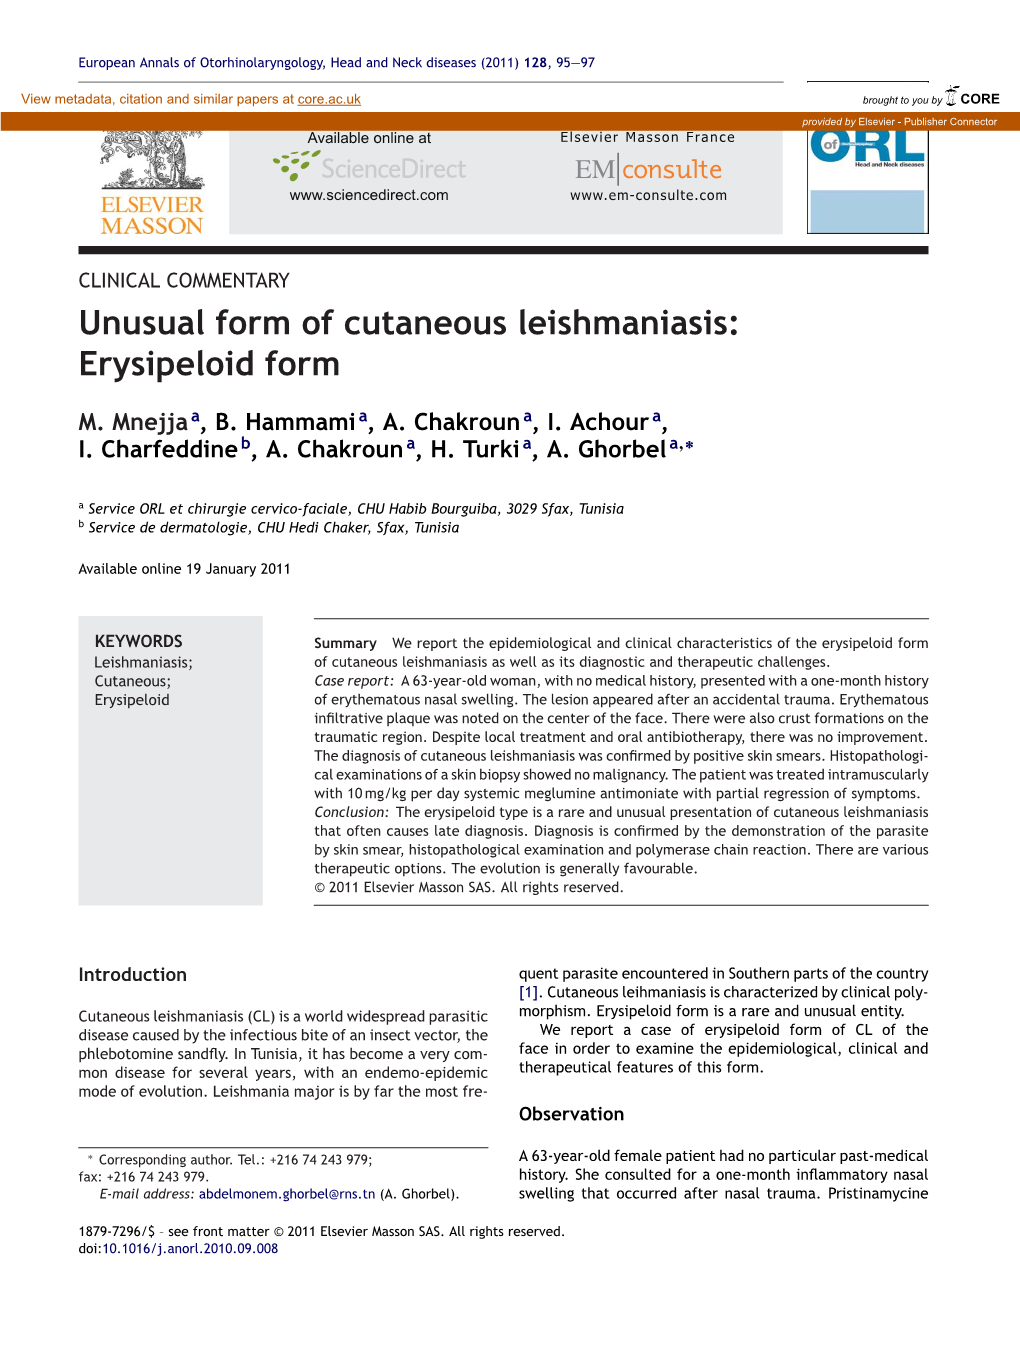 Unusual Form of Cutaneous Leishmaniasis: Erysipeloid Form